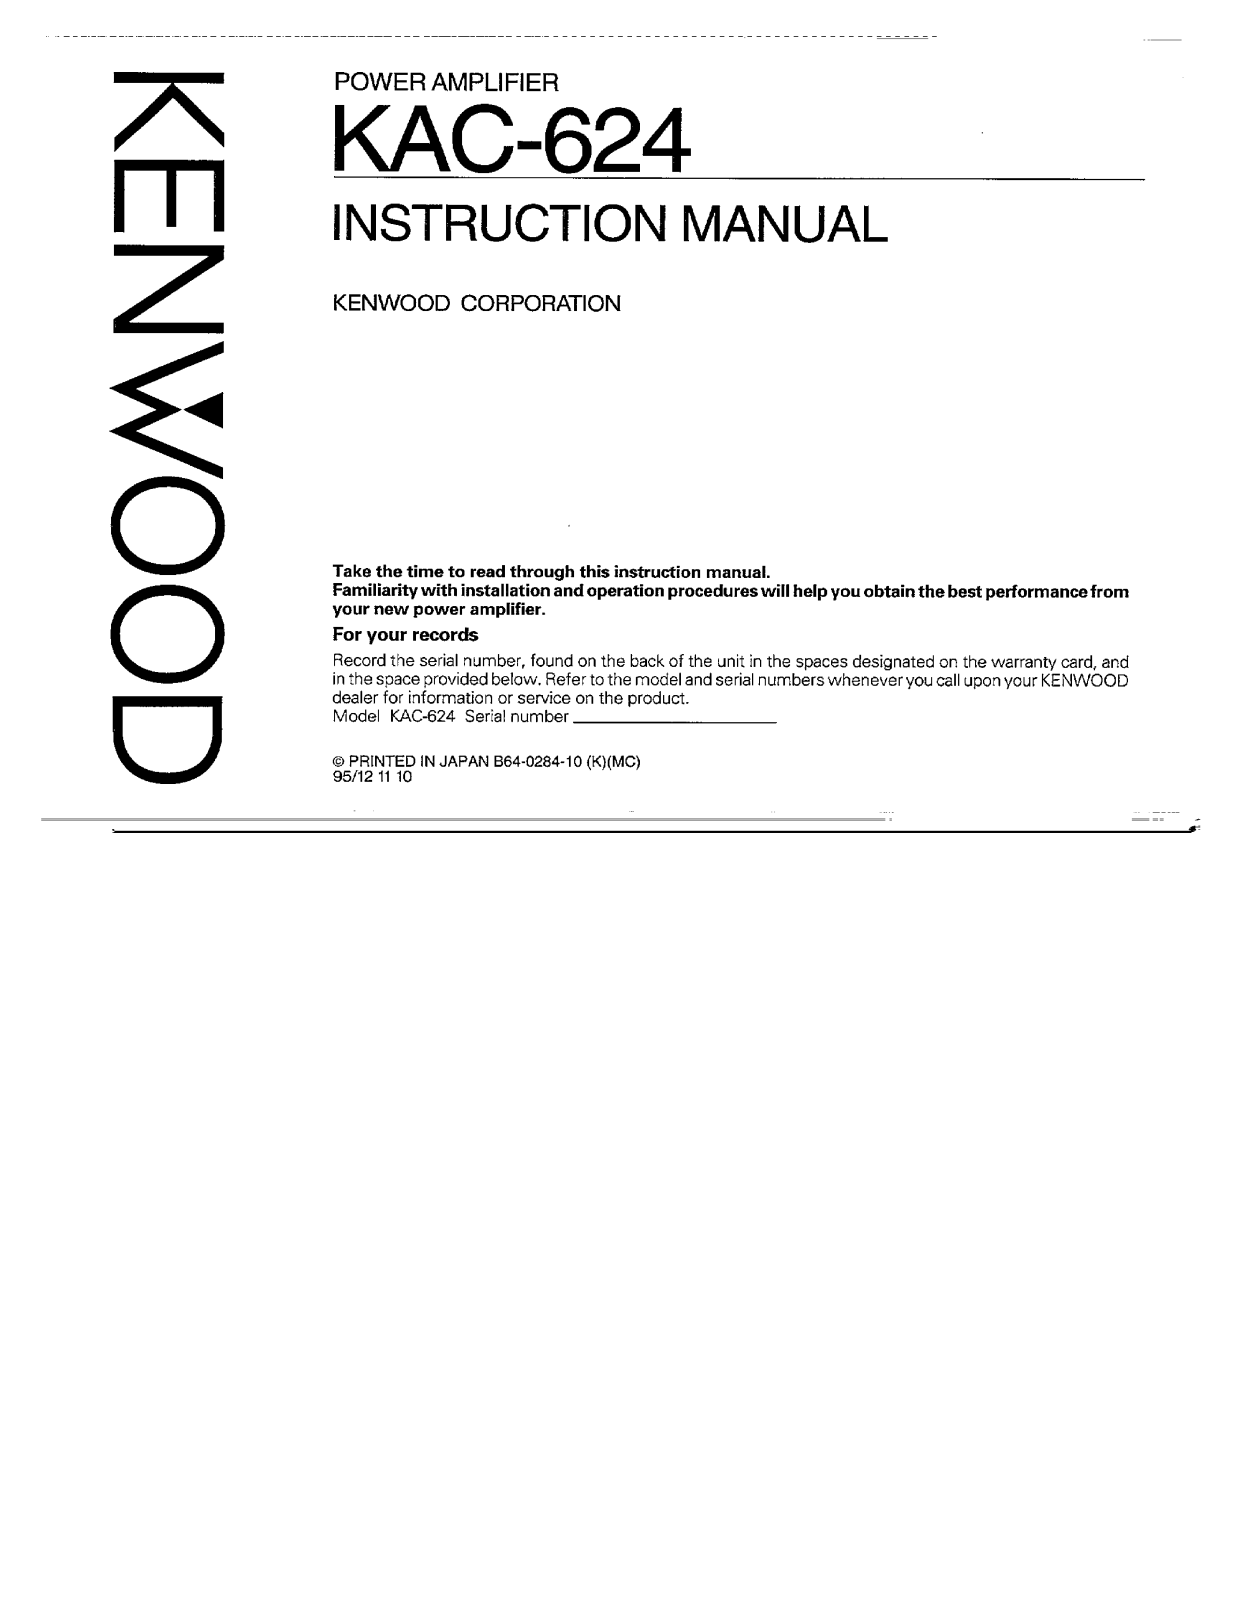 Kenwood KAC-624 Owner's Manual